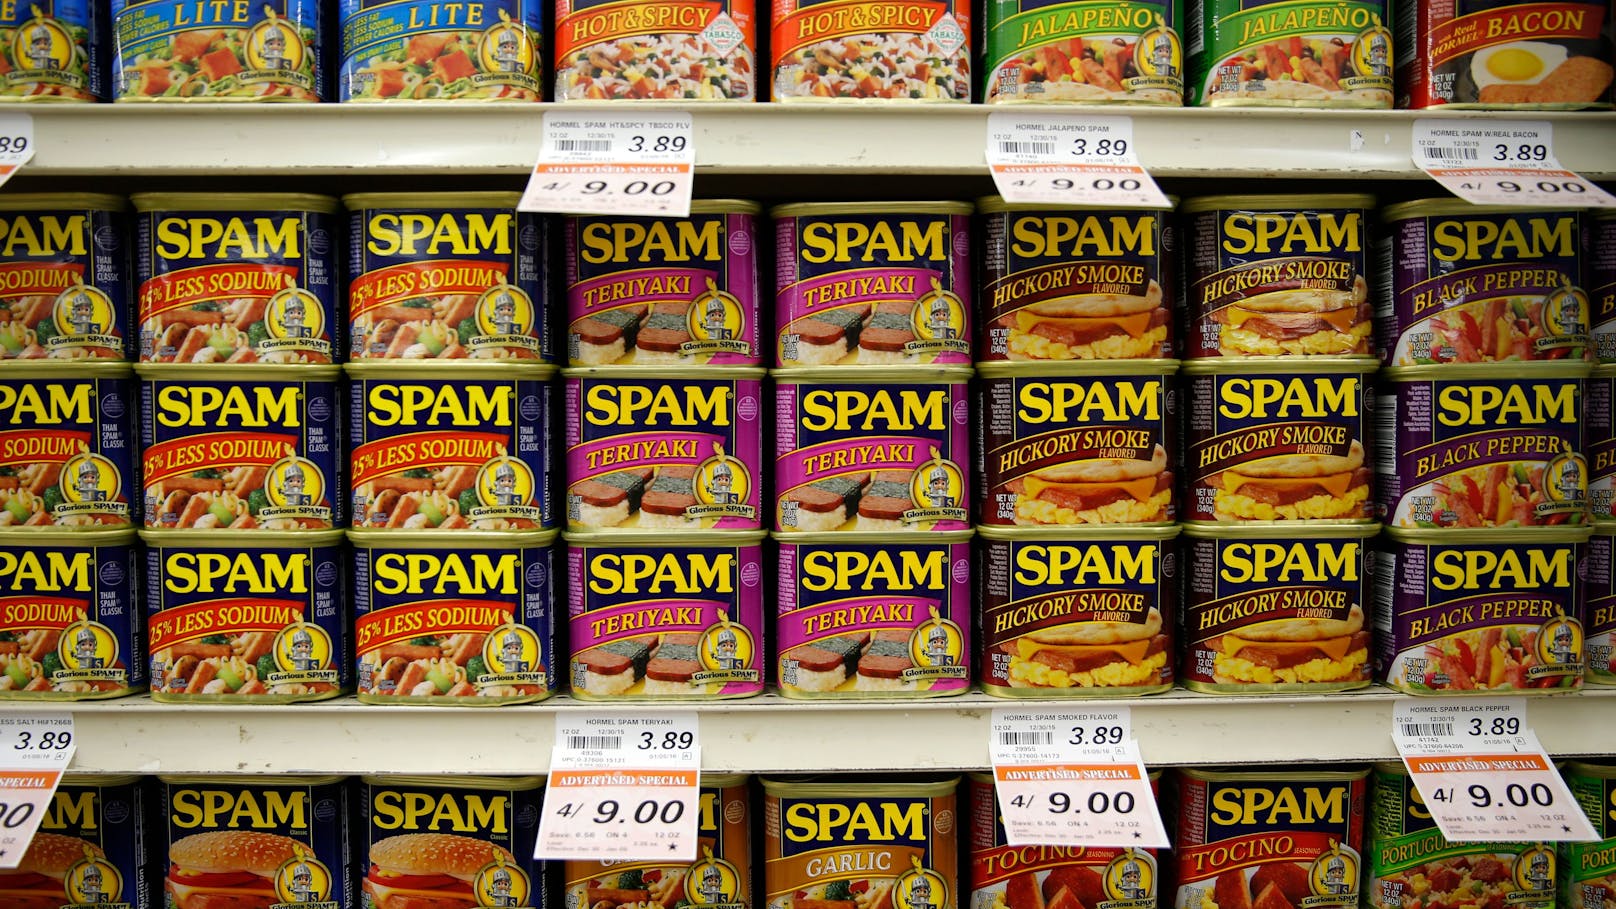 Es wird angenommen, dass "Spam" die Kurzform von "spiced ham" – gewürzter Schinken – ist. 